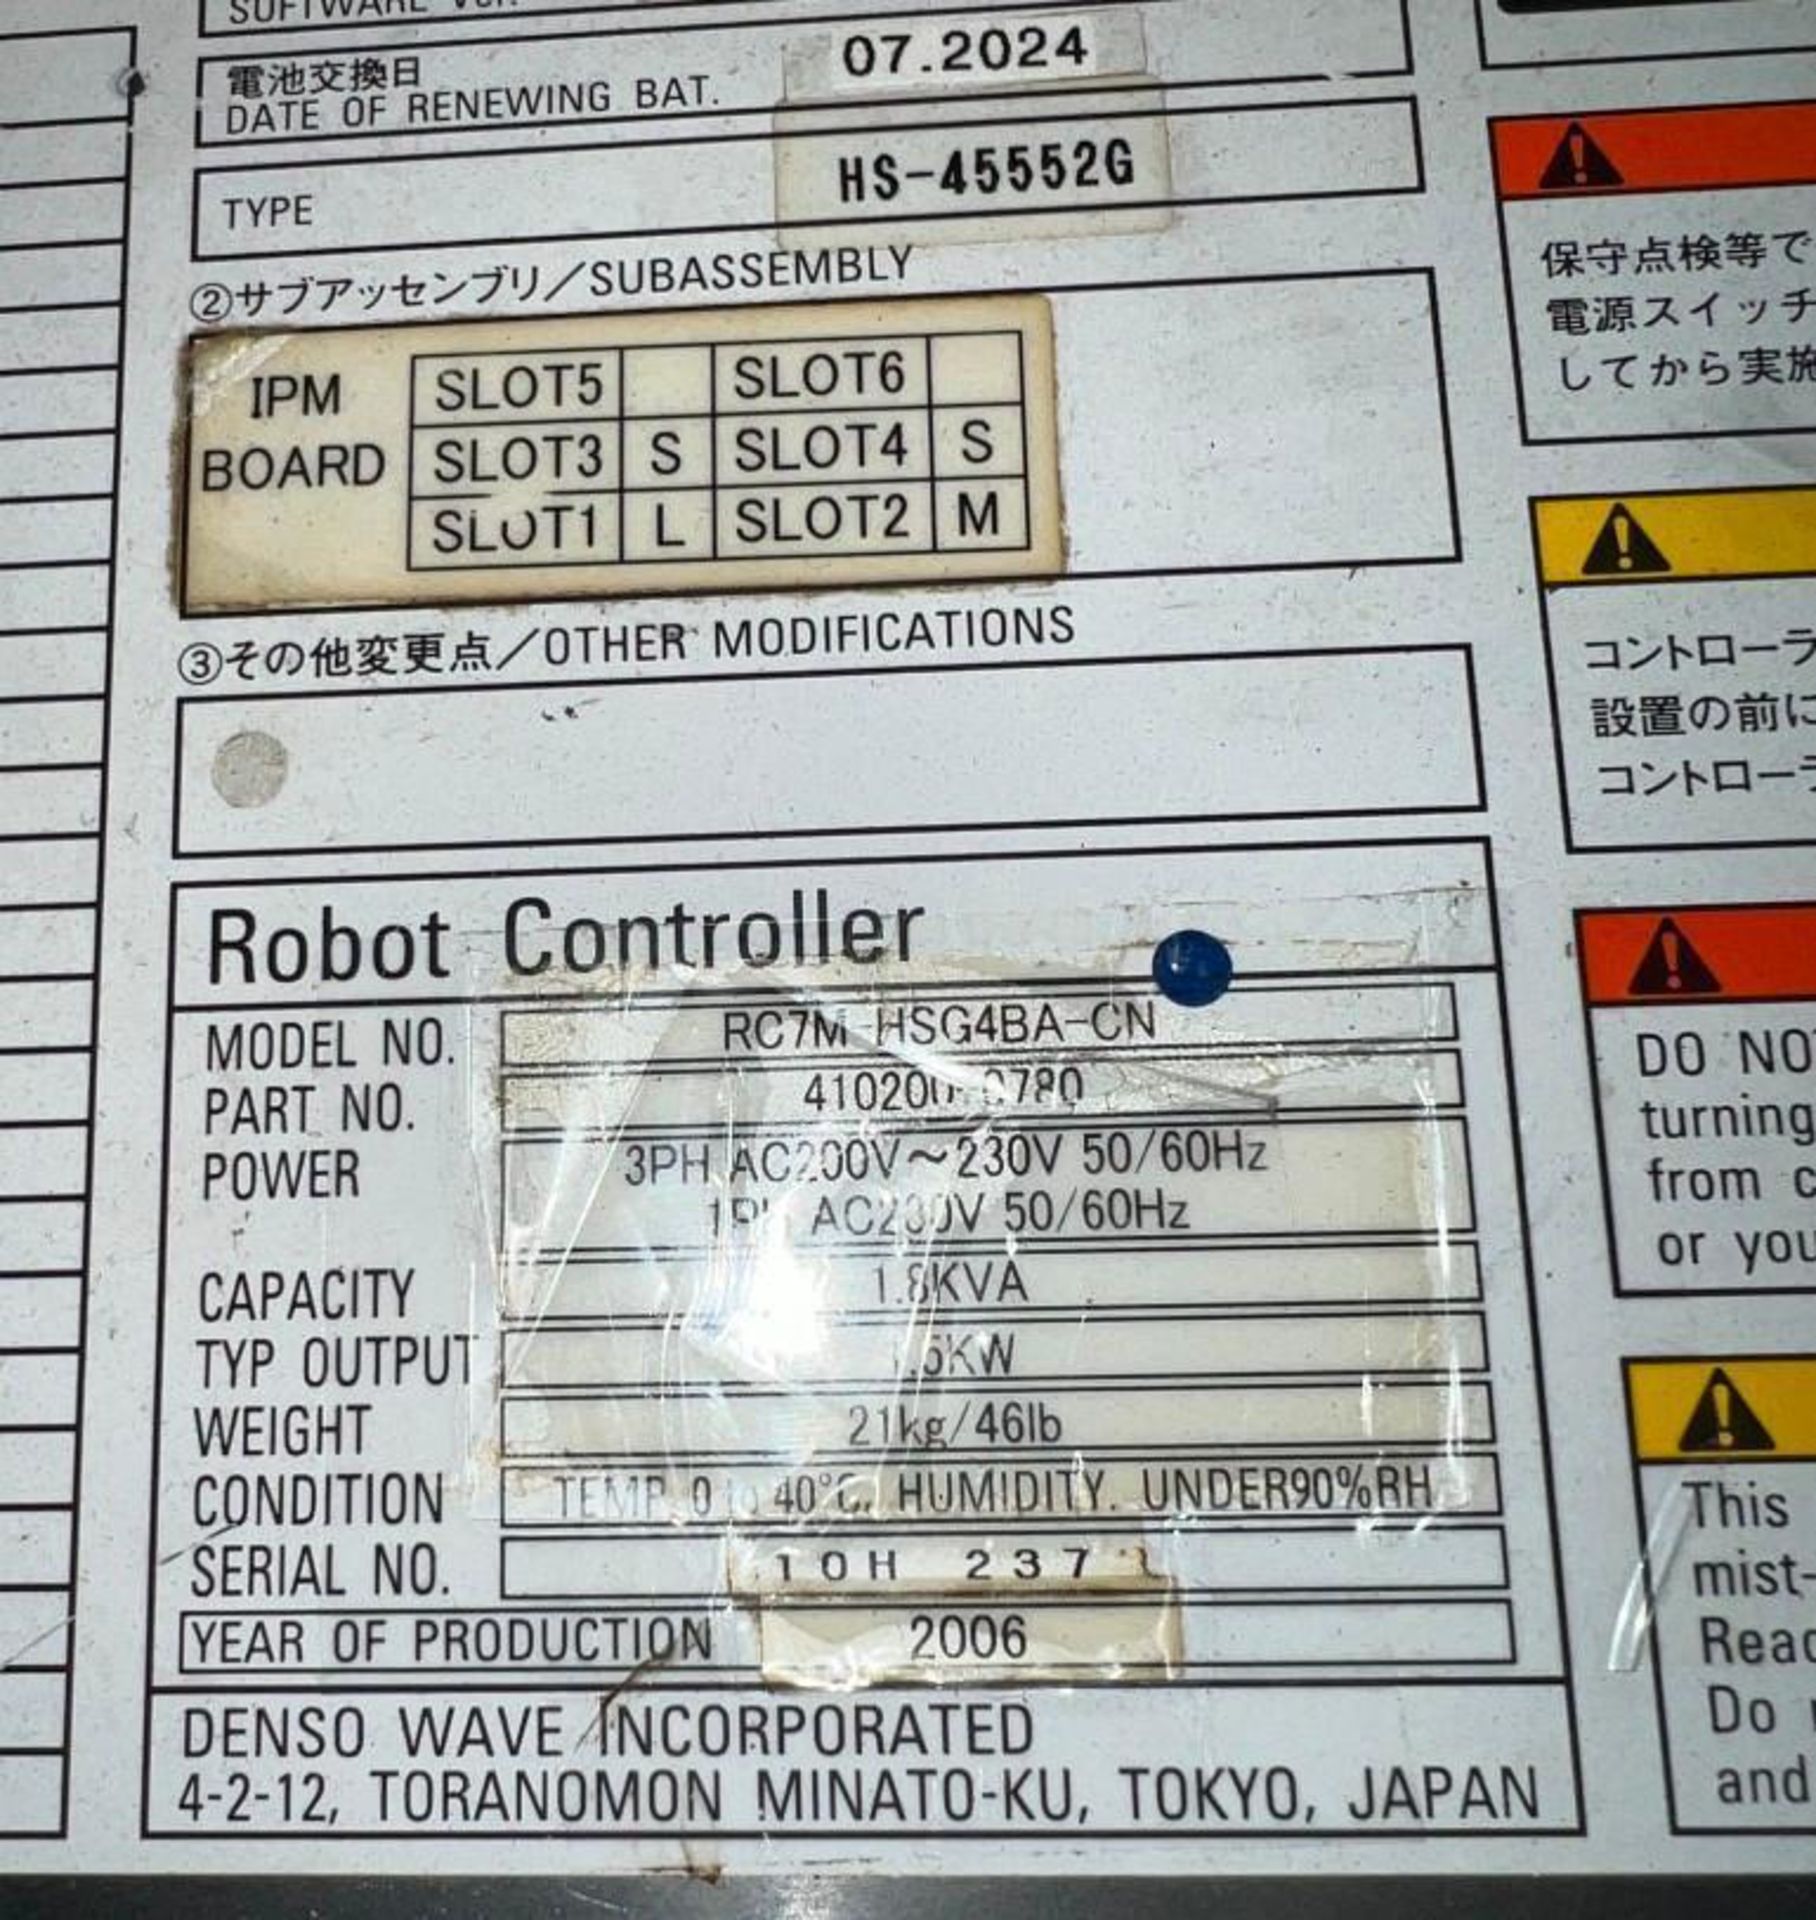 Denso #RC7M-HSG4BA-CN Robot Controller - Image 4 of 4